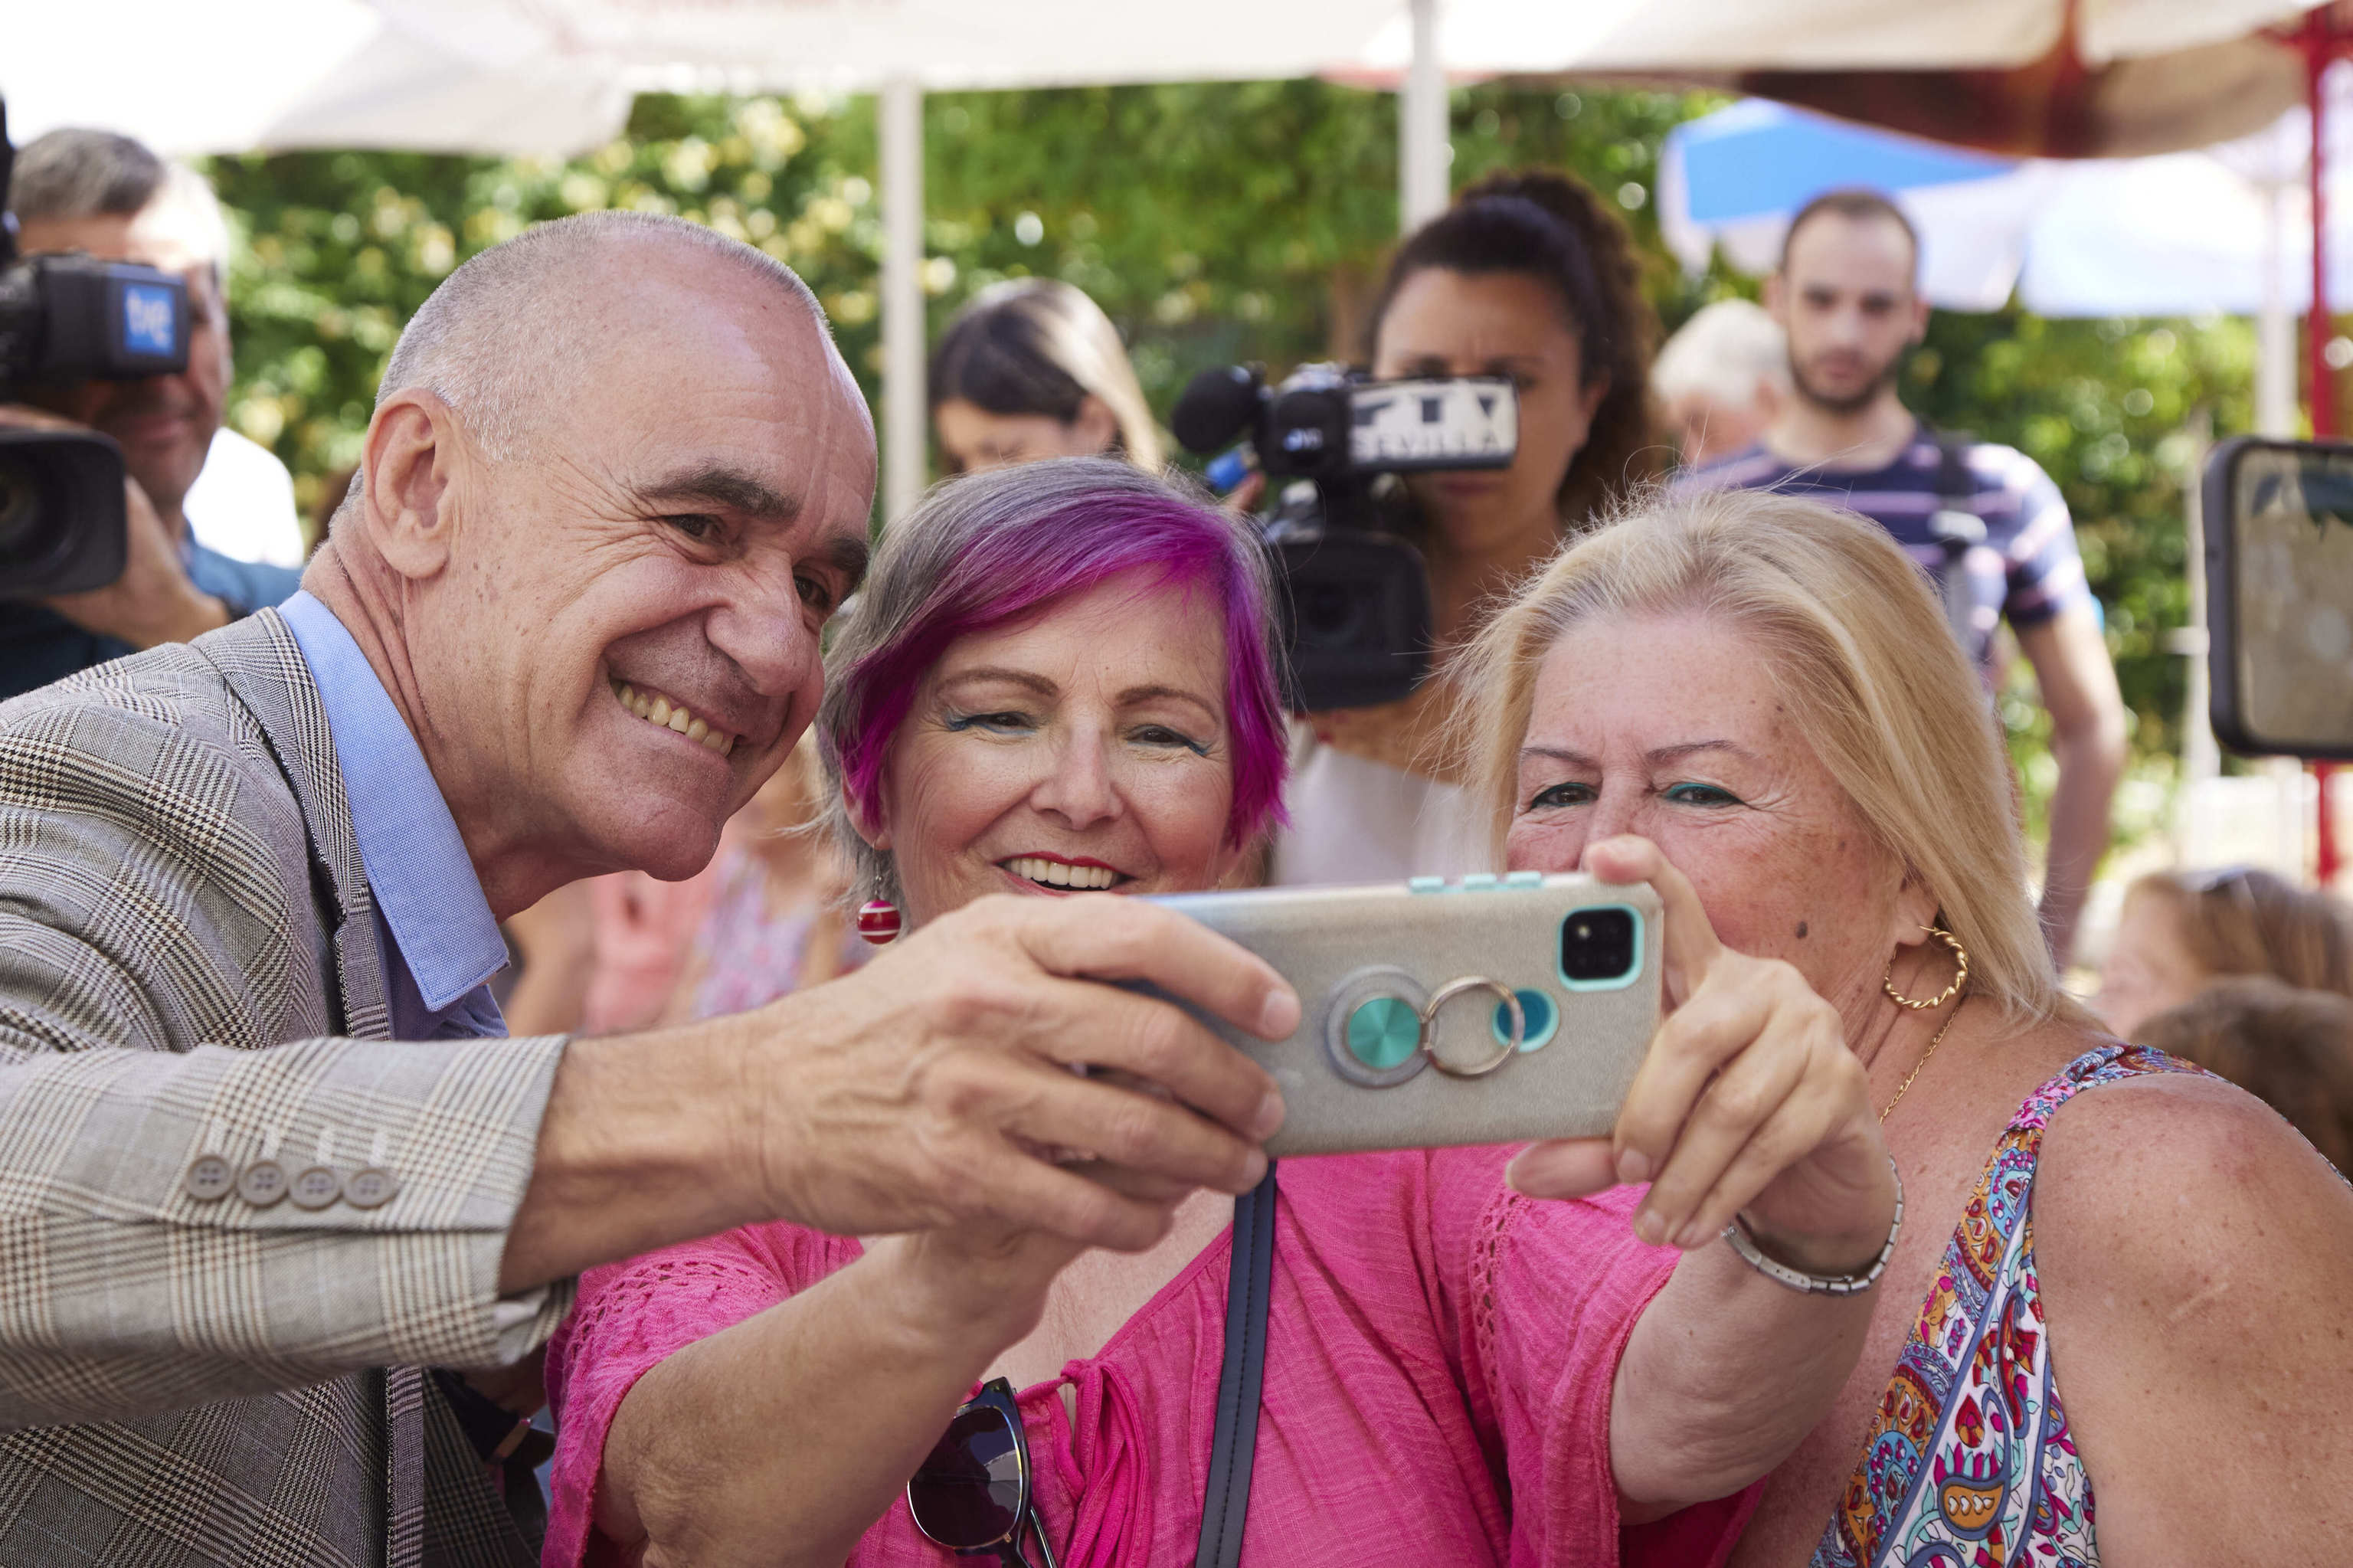 El alcalde y candidato del PSOE en Sevilla, Antonio Muoz, se hace un selfie con dos simpatizantes.